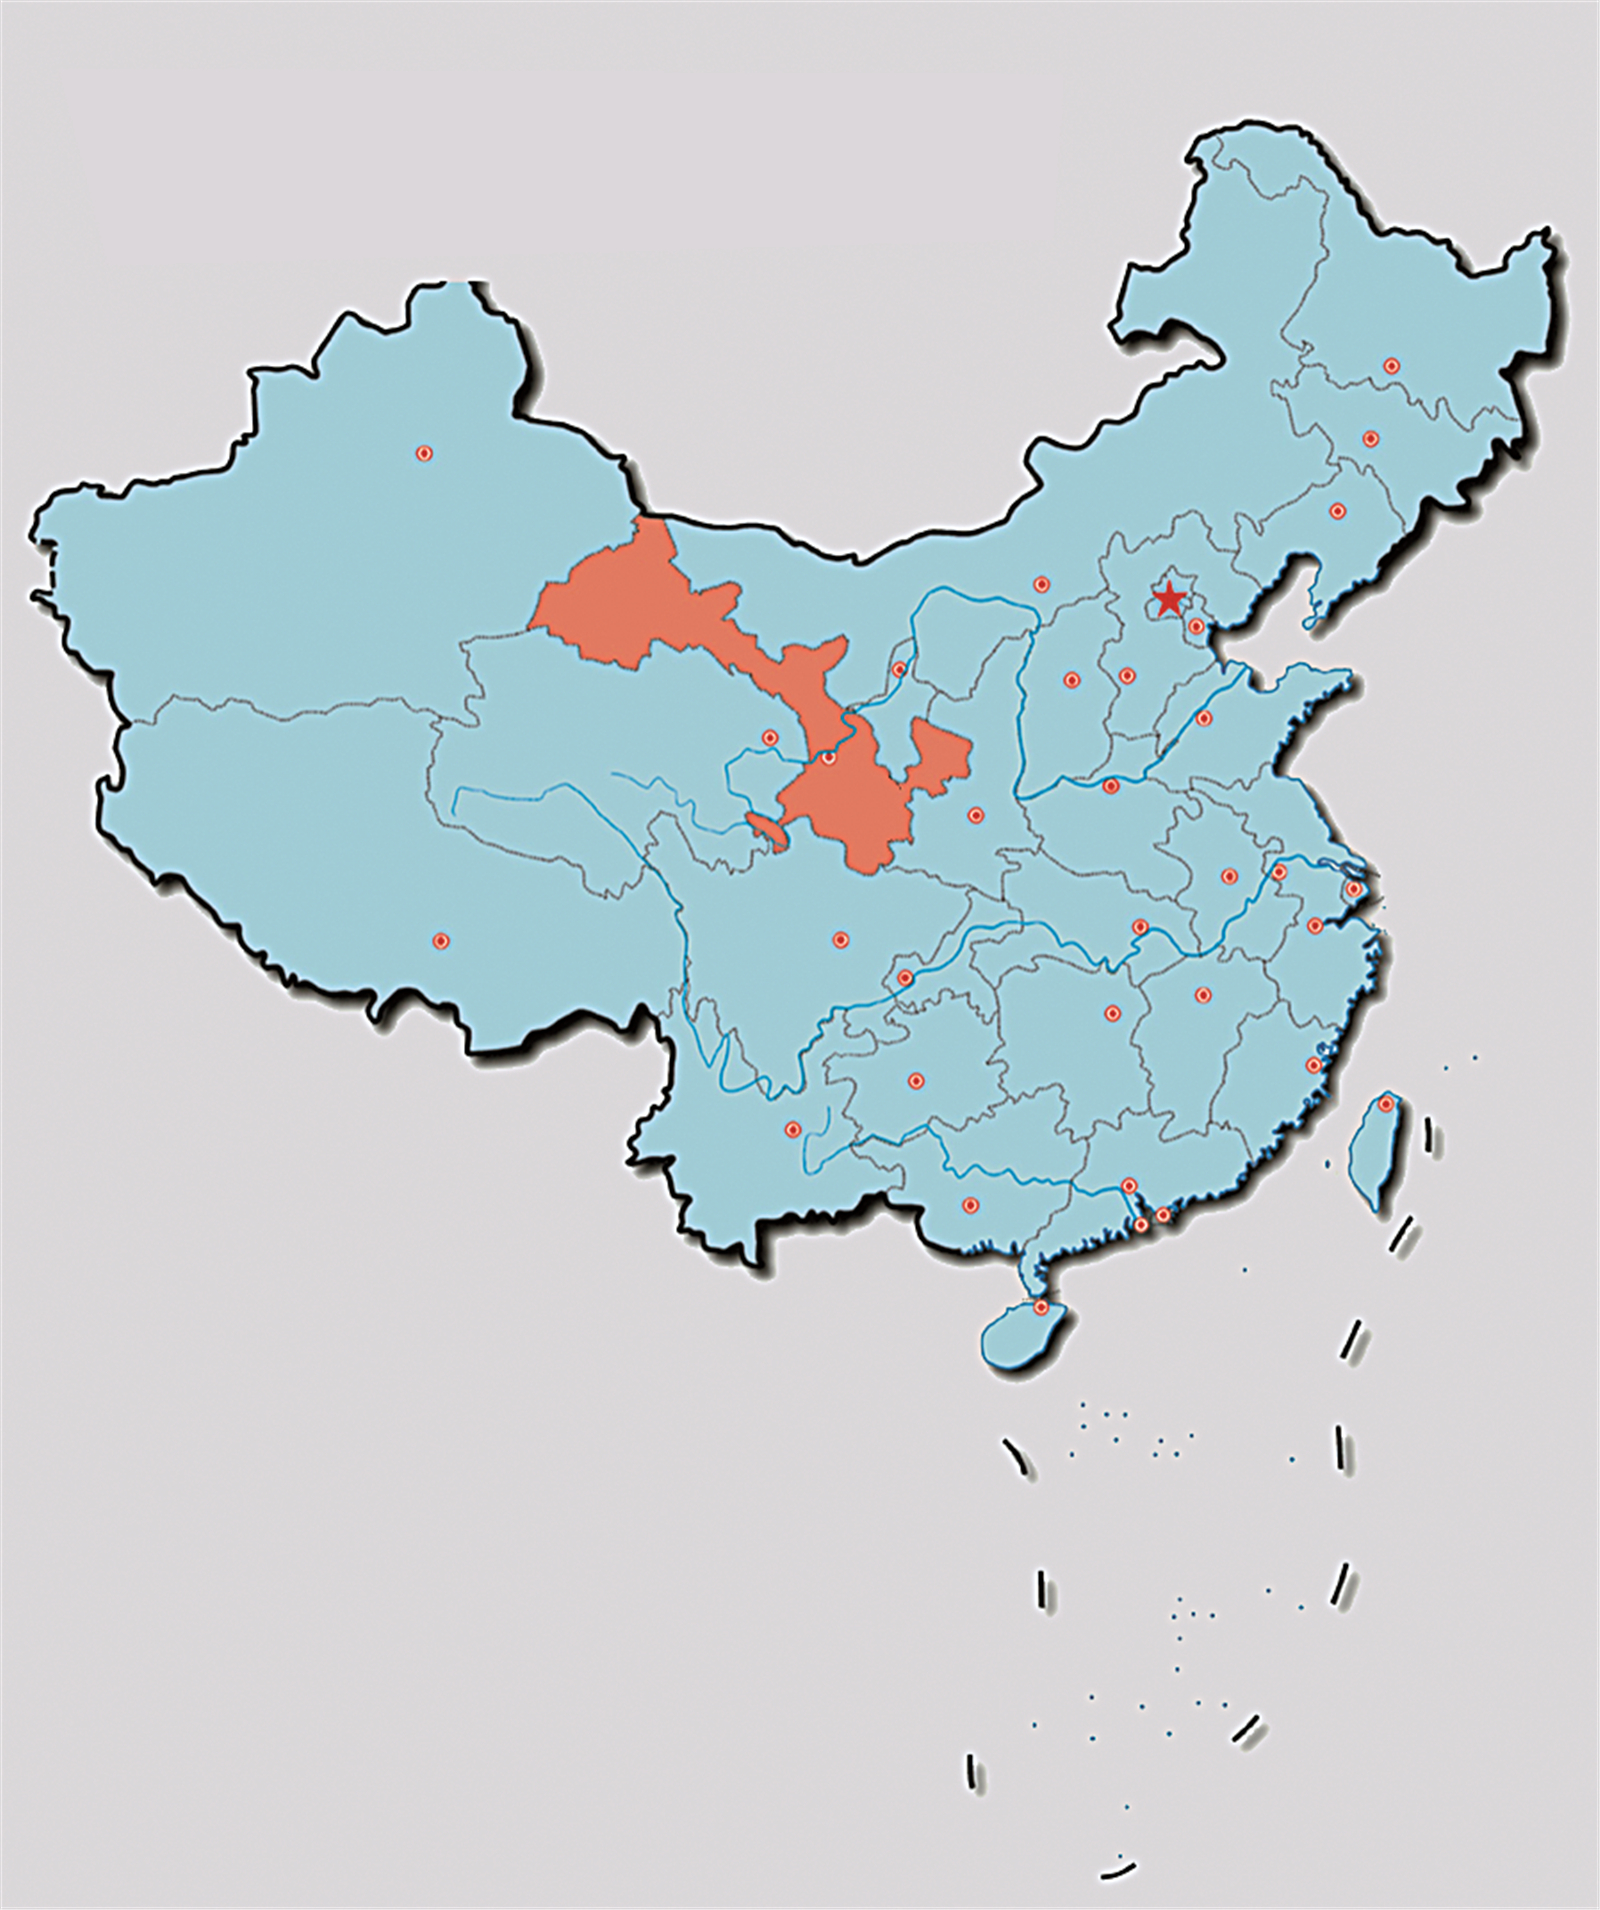 甘肃在中国的地理位置示意图